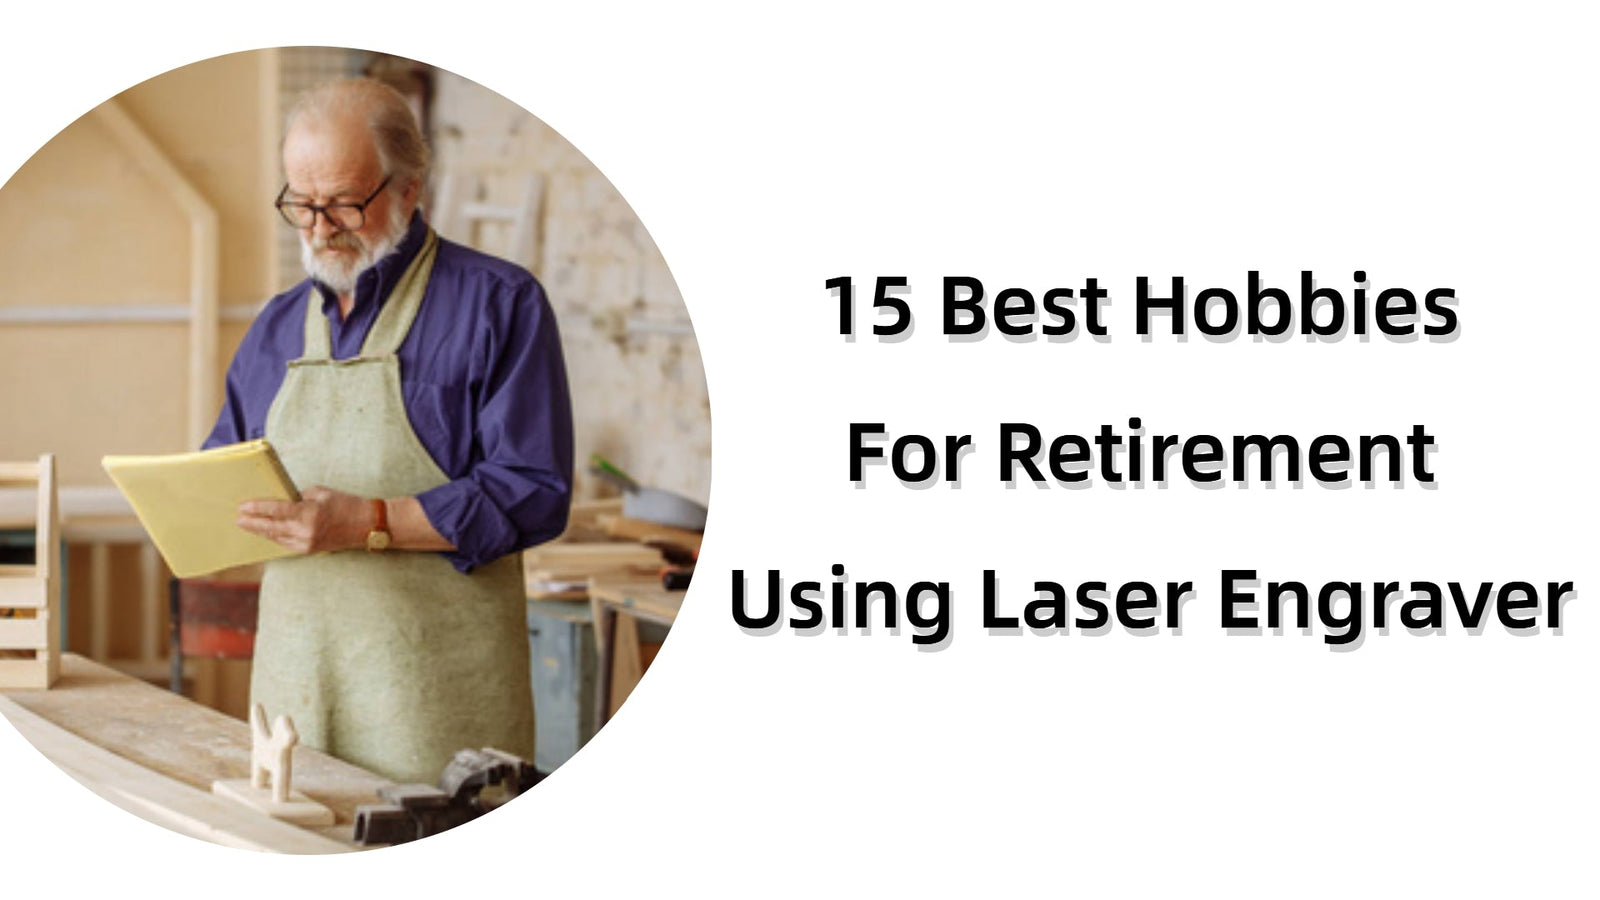 15 Best Hobbies For Retirement Using Laser Engraver - LONGER